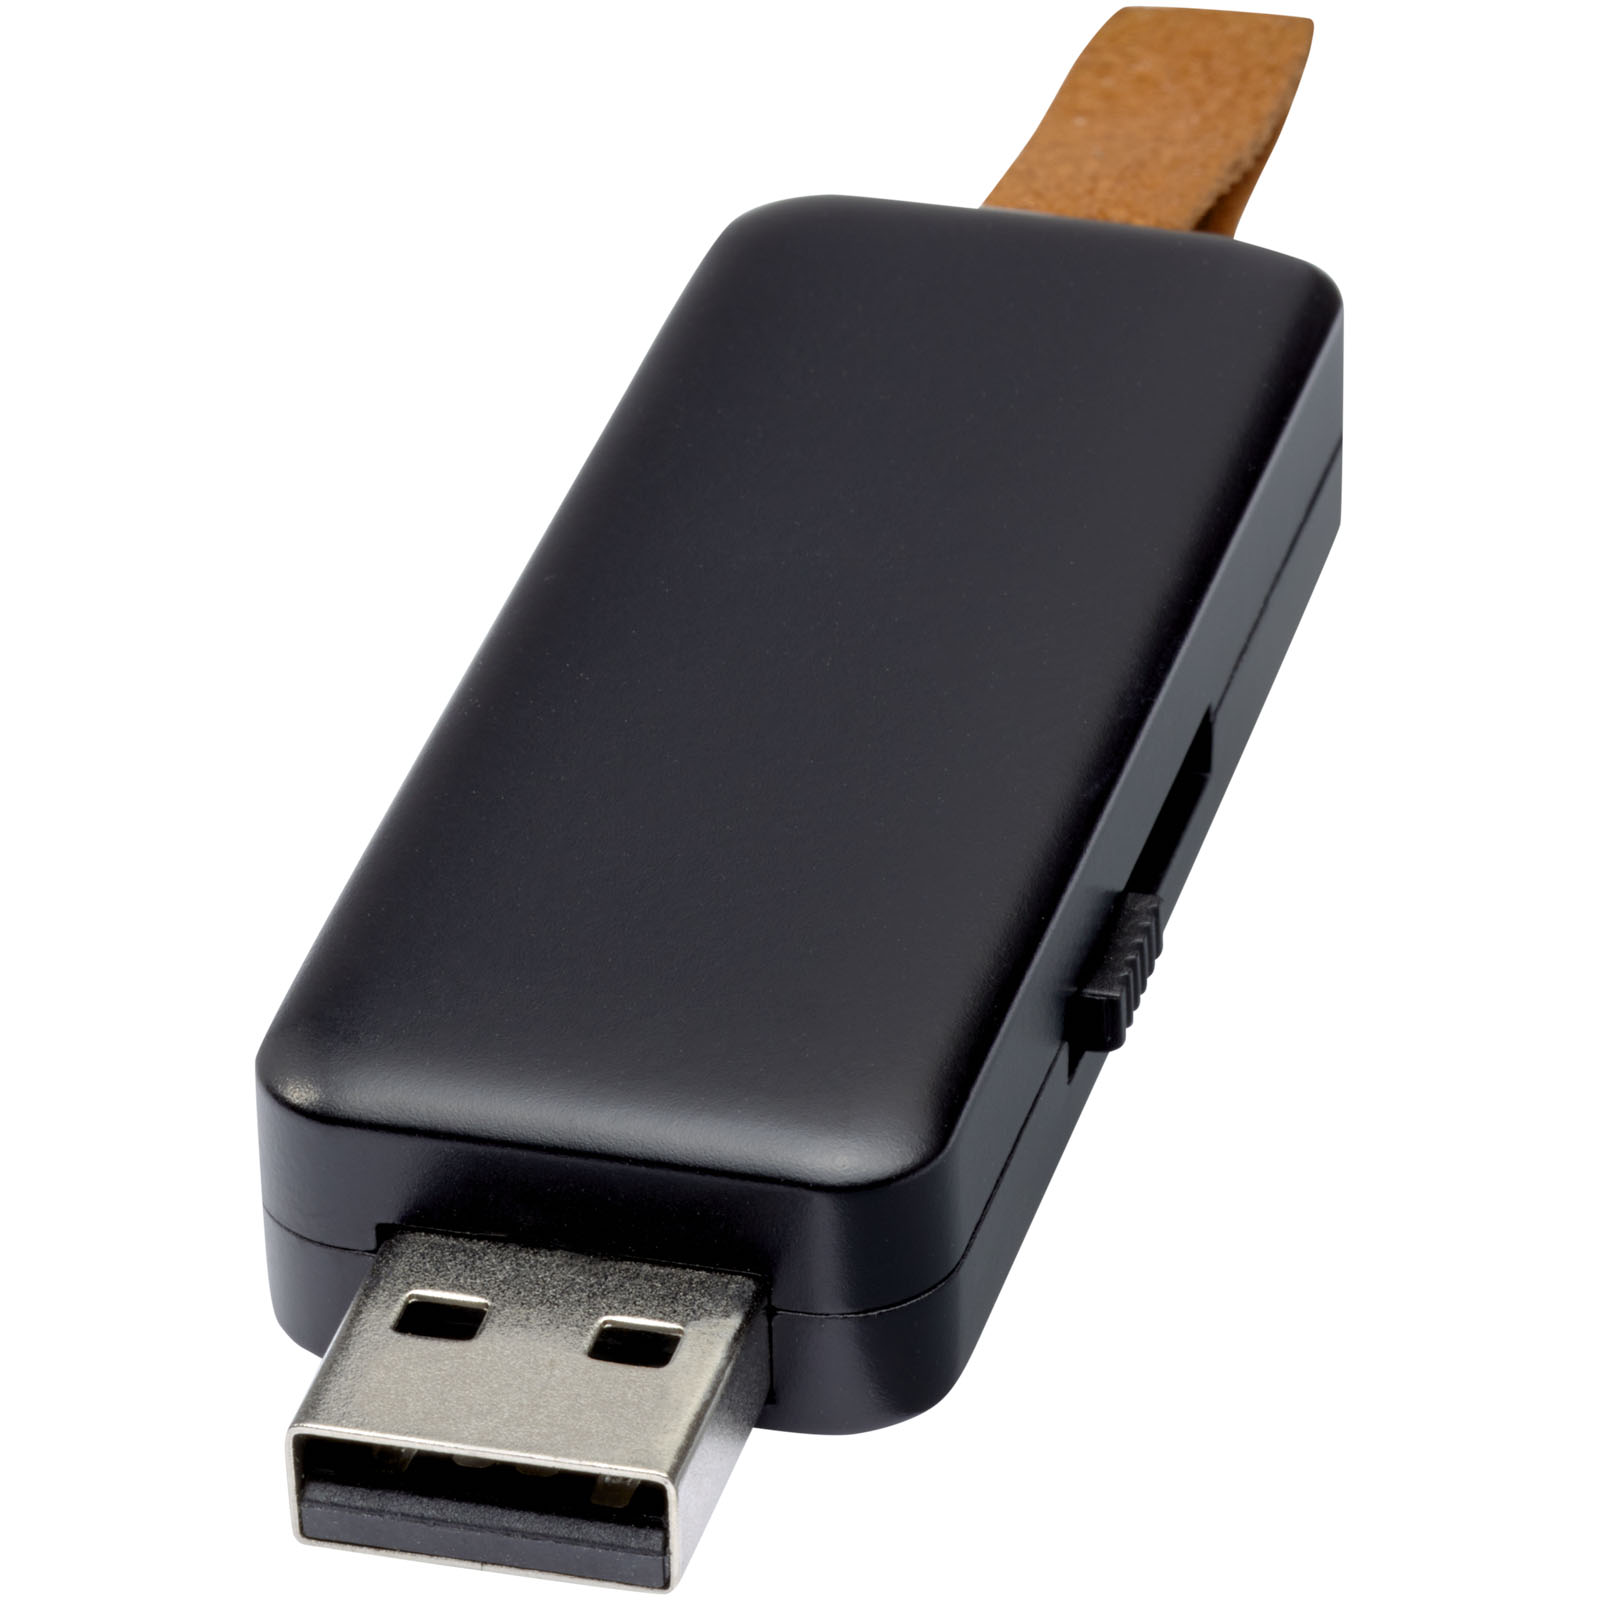 USB Flash Drives - Gleam 16GB light-up USB flash drive